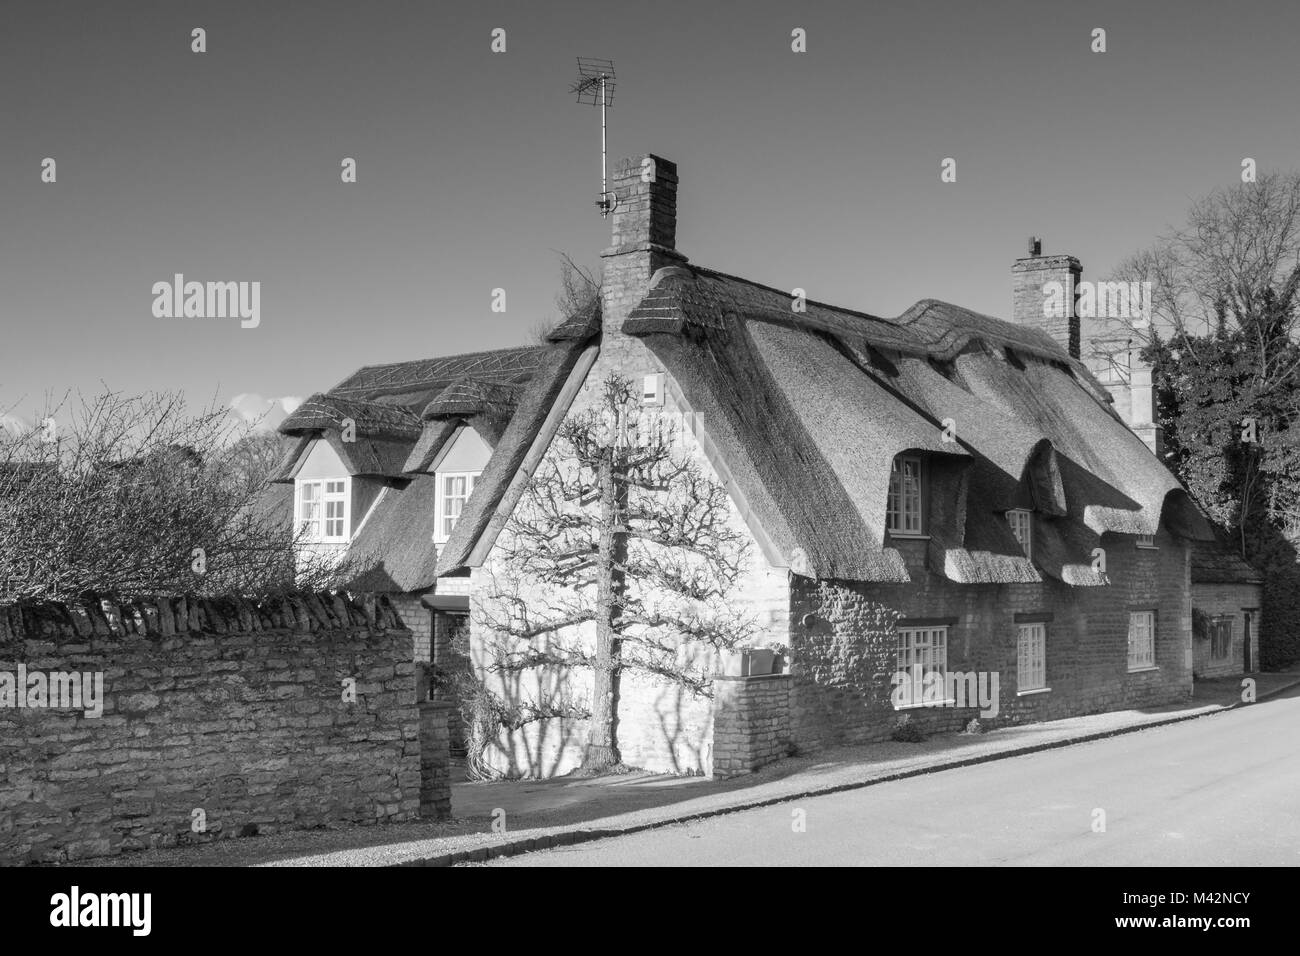 Une image monochrome d'une maison en pierre avec un toit de chaume. Banque D'Images